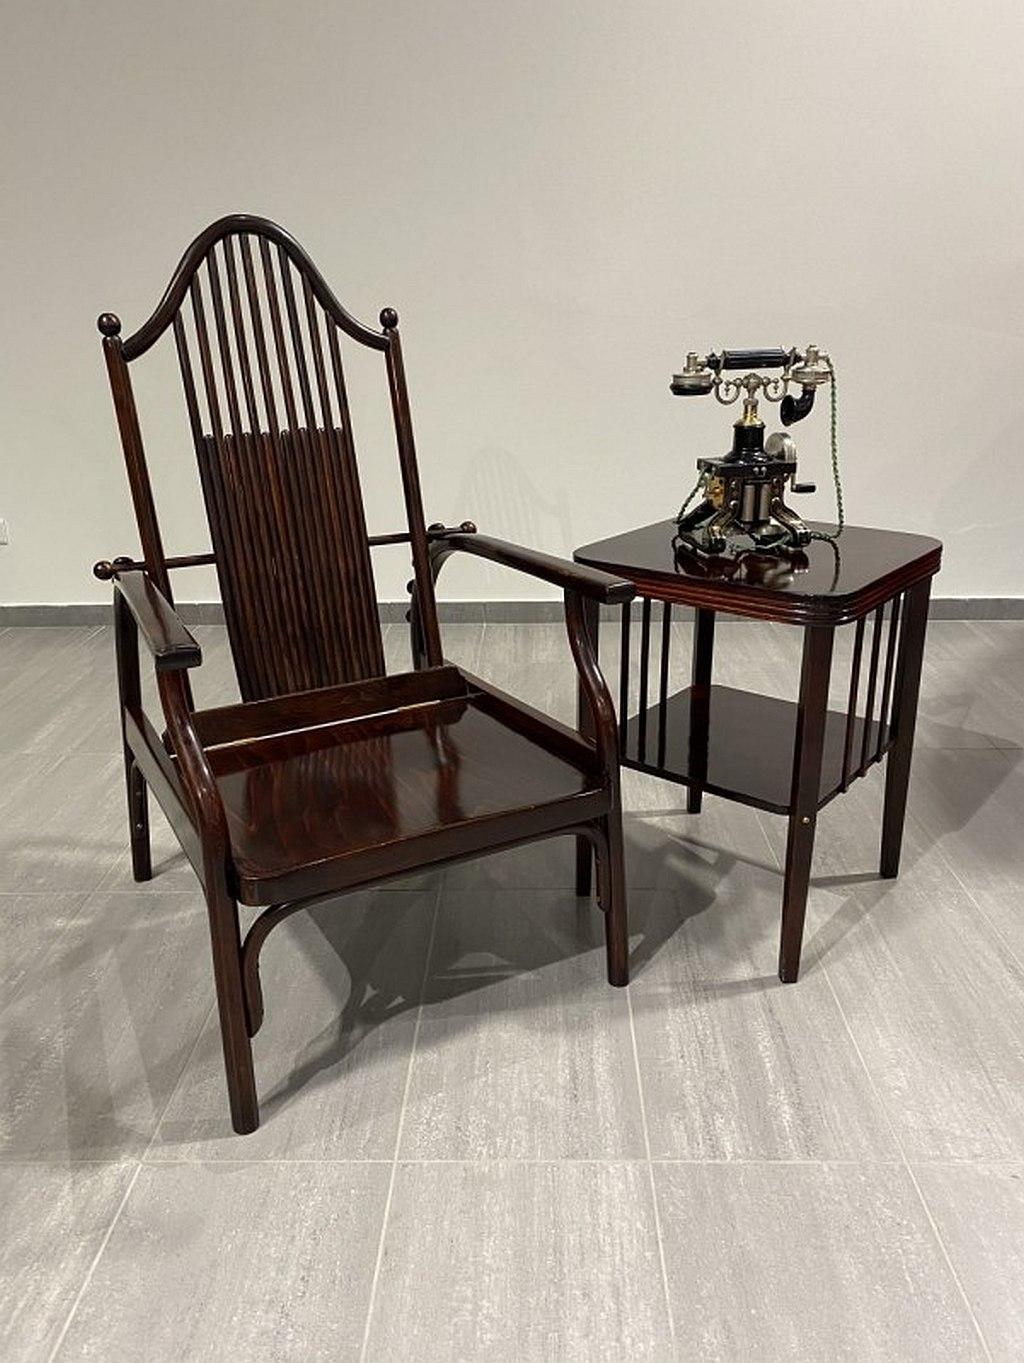 Très rare fauteuil réglable avec les attributs de Josef Hoffmann exécuté par Jacob & Josef Kohn ou Wienner Werkstatte. Teinté et repoli par des professionnels.